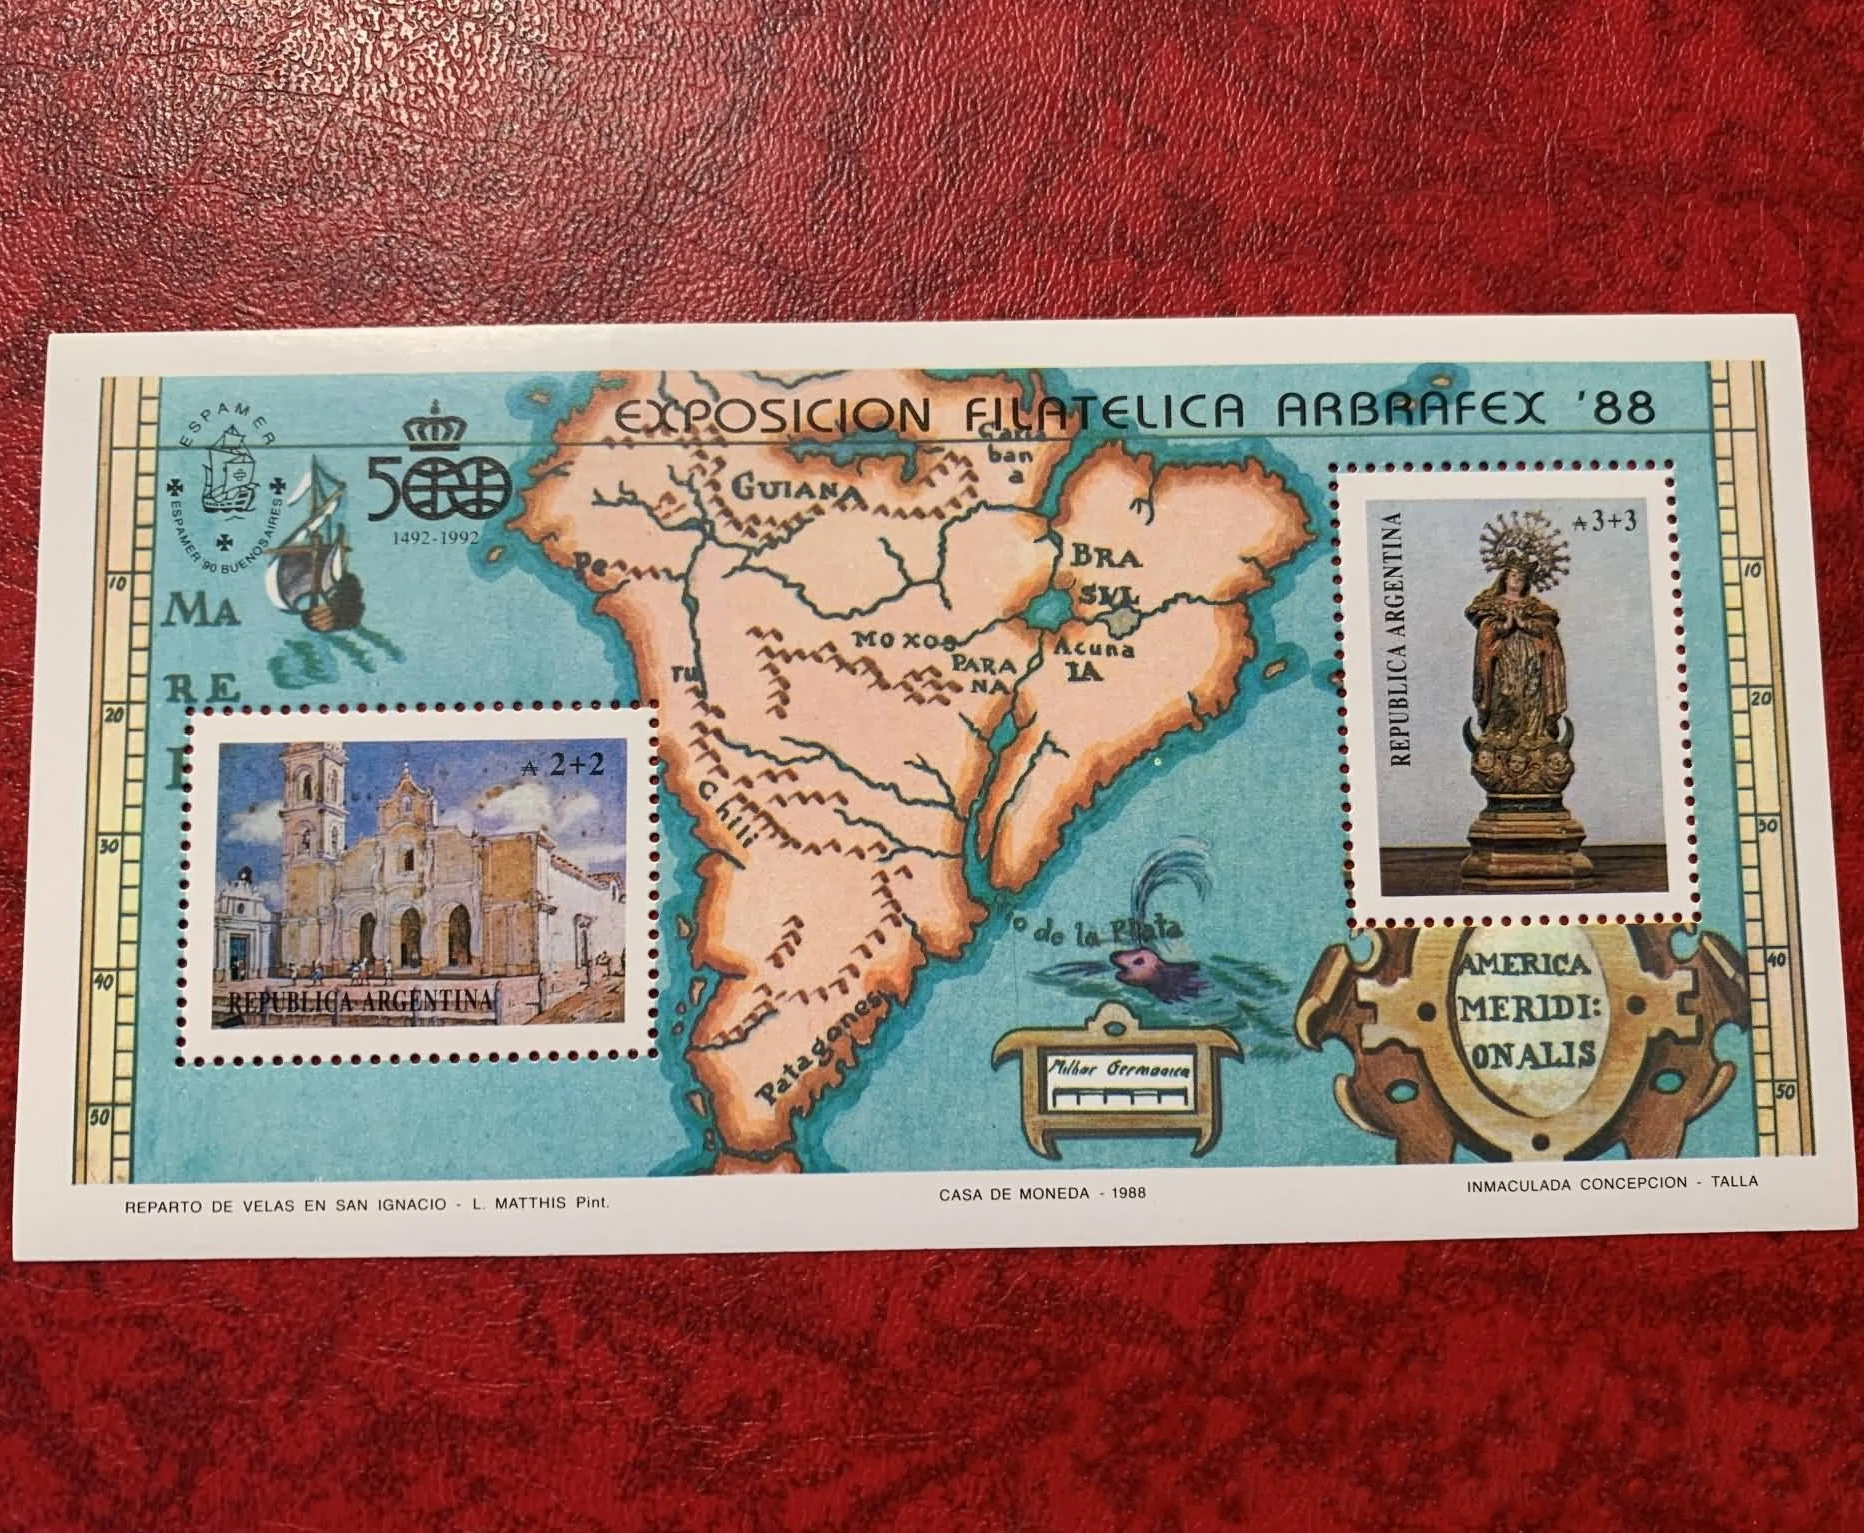 

1 лист, Новая почта Аргентины 1988, карта Южной Америки, церковная архитектура, сувенир печати на листе MNH